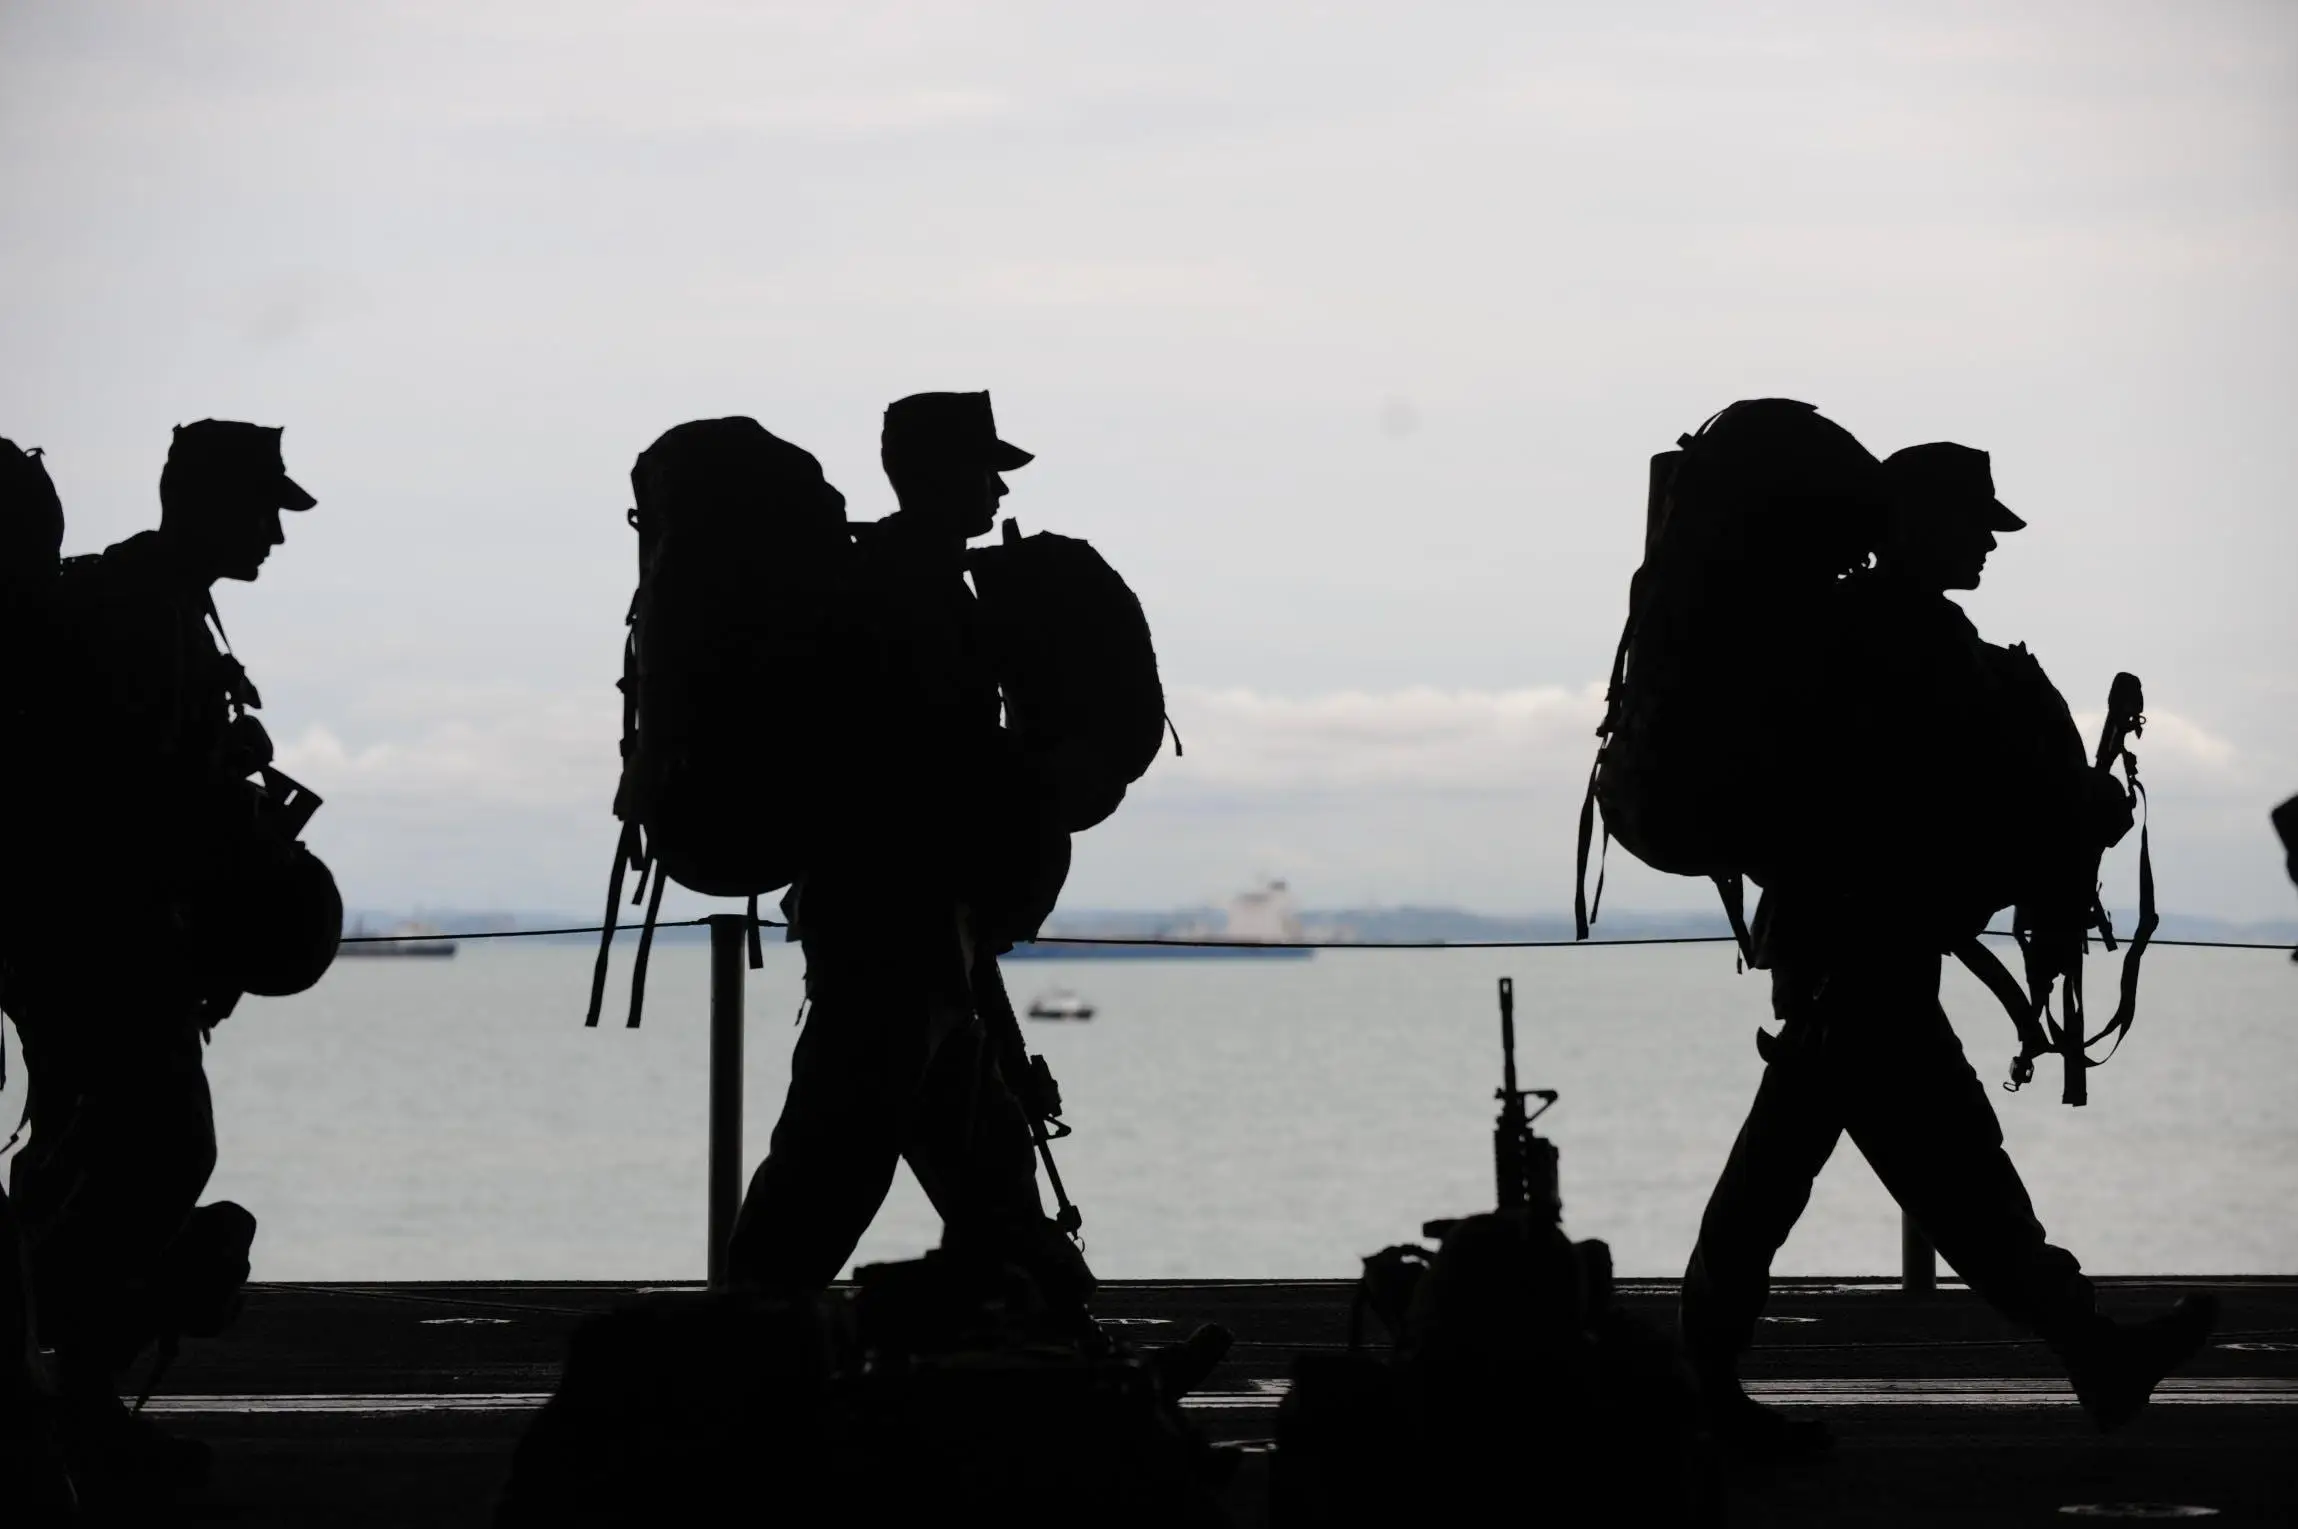 Die Silhouette von drei Soldaten, die viel Gepäck und auch Waffen tragen